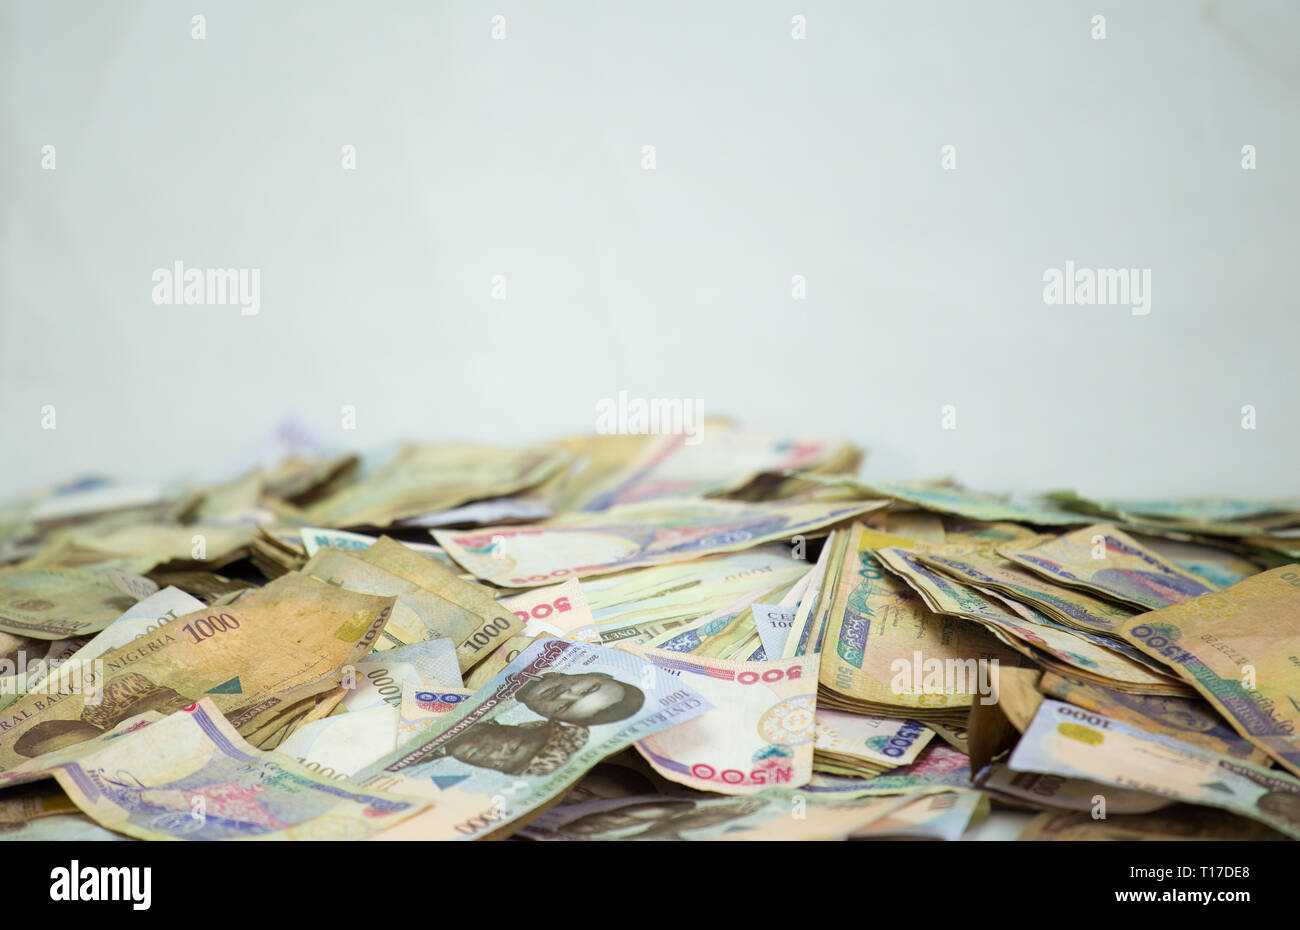 Heap of nigeria naira notes on white background Stock Photo